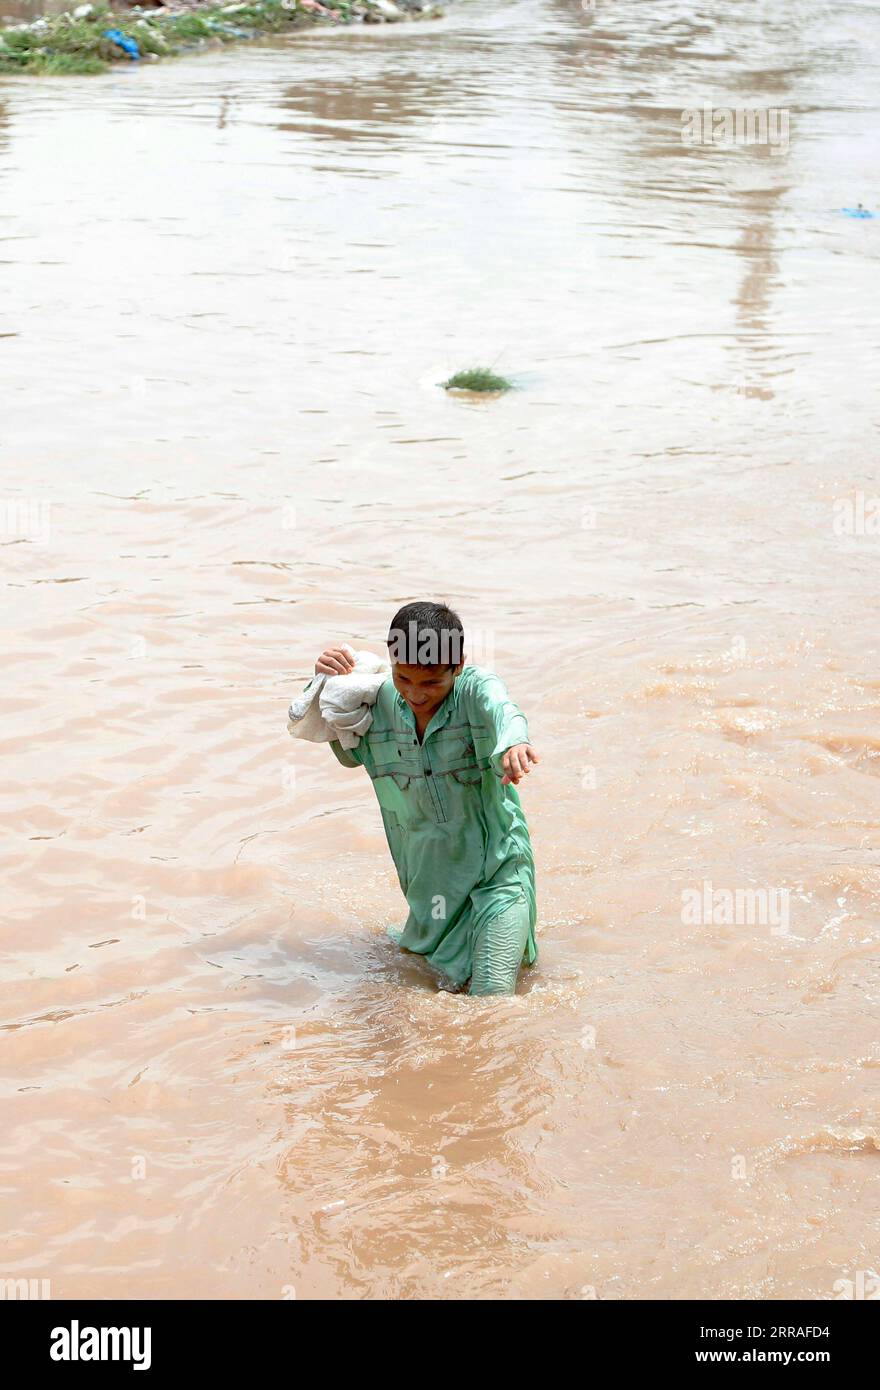 210728 -- ISLAMABAD, le 28 juillet 2021 -- Un garçon traverse les eaux après de fortes pluies à Islamabad, capitale du Pakistan, le 28 juillet 2021. Les responsables pakistanais ont déclaré mercredi que de fortes pluies avaient fait des ravages dans la capitale fédérale du pays, Islamabad, tuant au moins deux personnes et en blessant plusieurs autres. PAKISTAN-ISLAMABAD-CRUE ÉCLAIR-APRÈS AhmadxKamal PUBLICATIONxNOTxINxCHN Banque D'Images